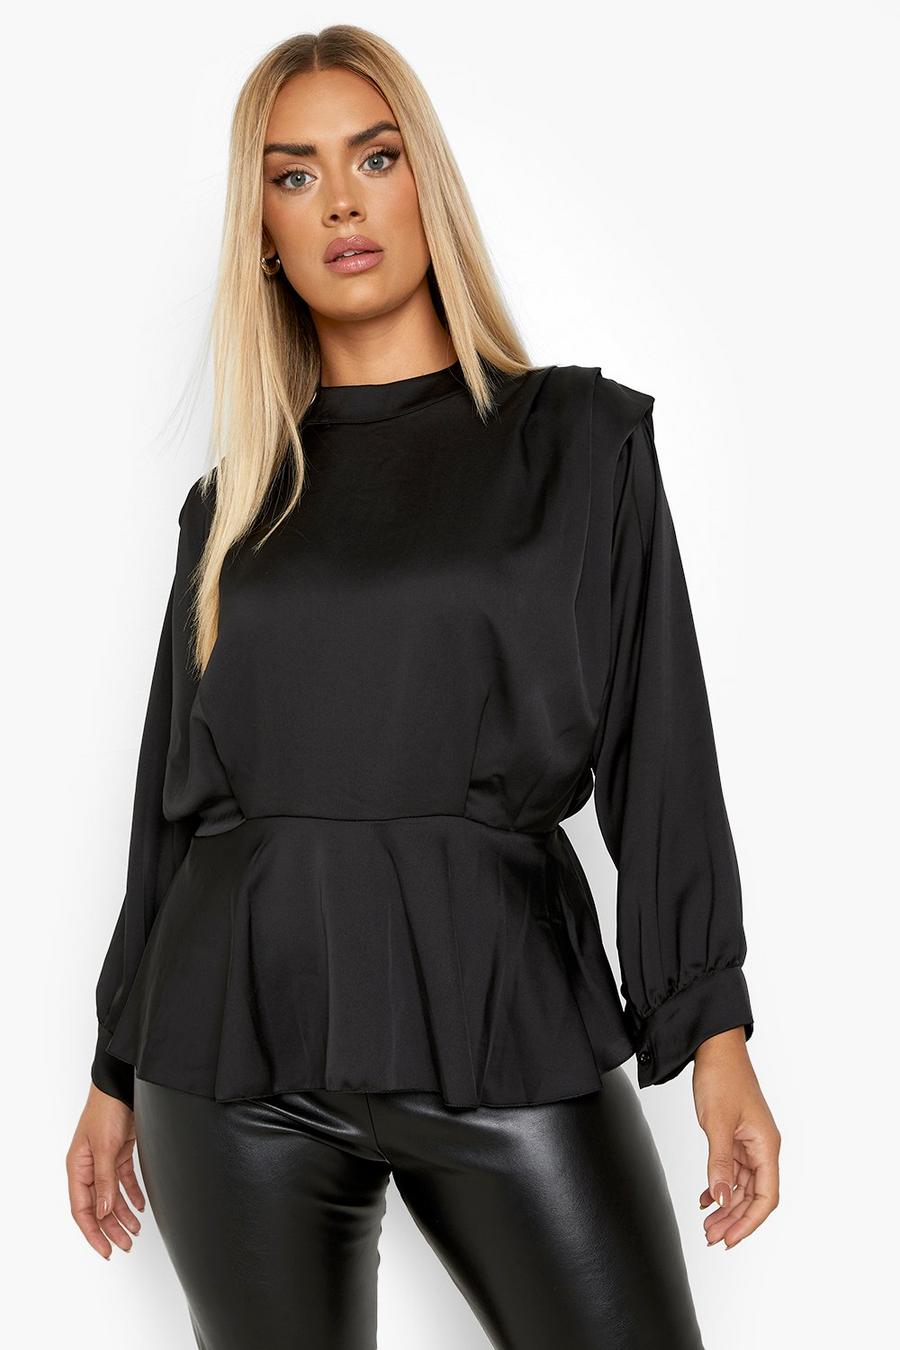 Blusa Plus Size in raso con collo alto e volant, Black nero